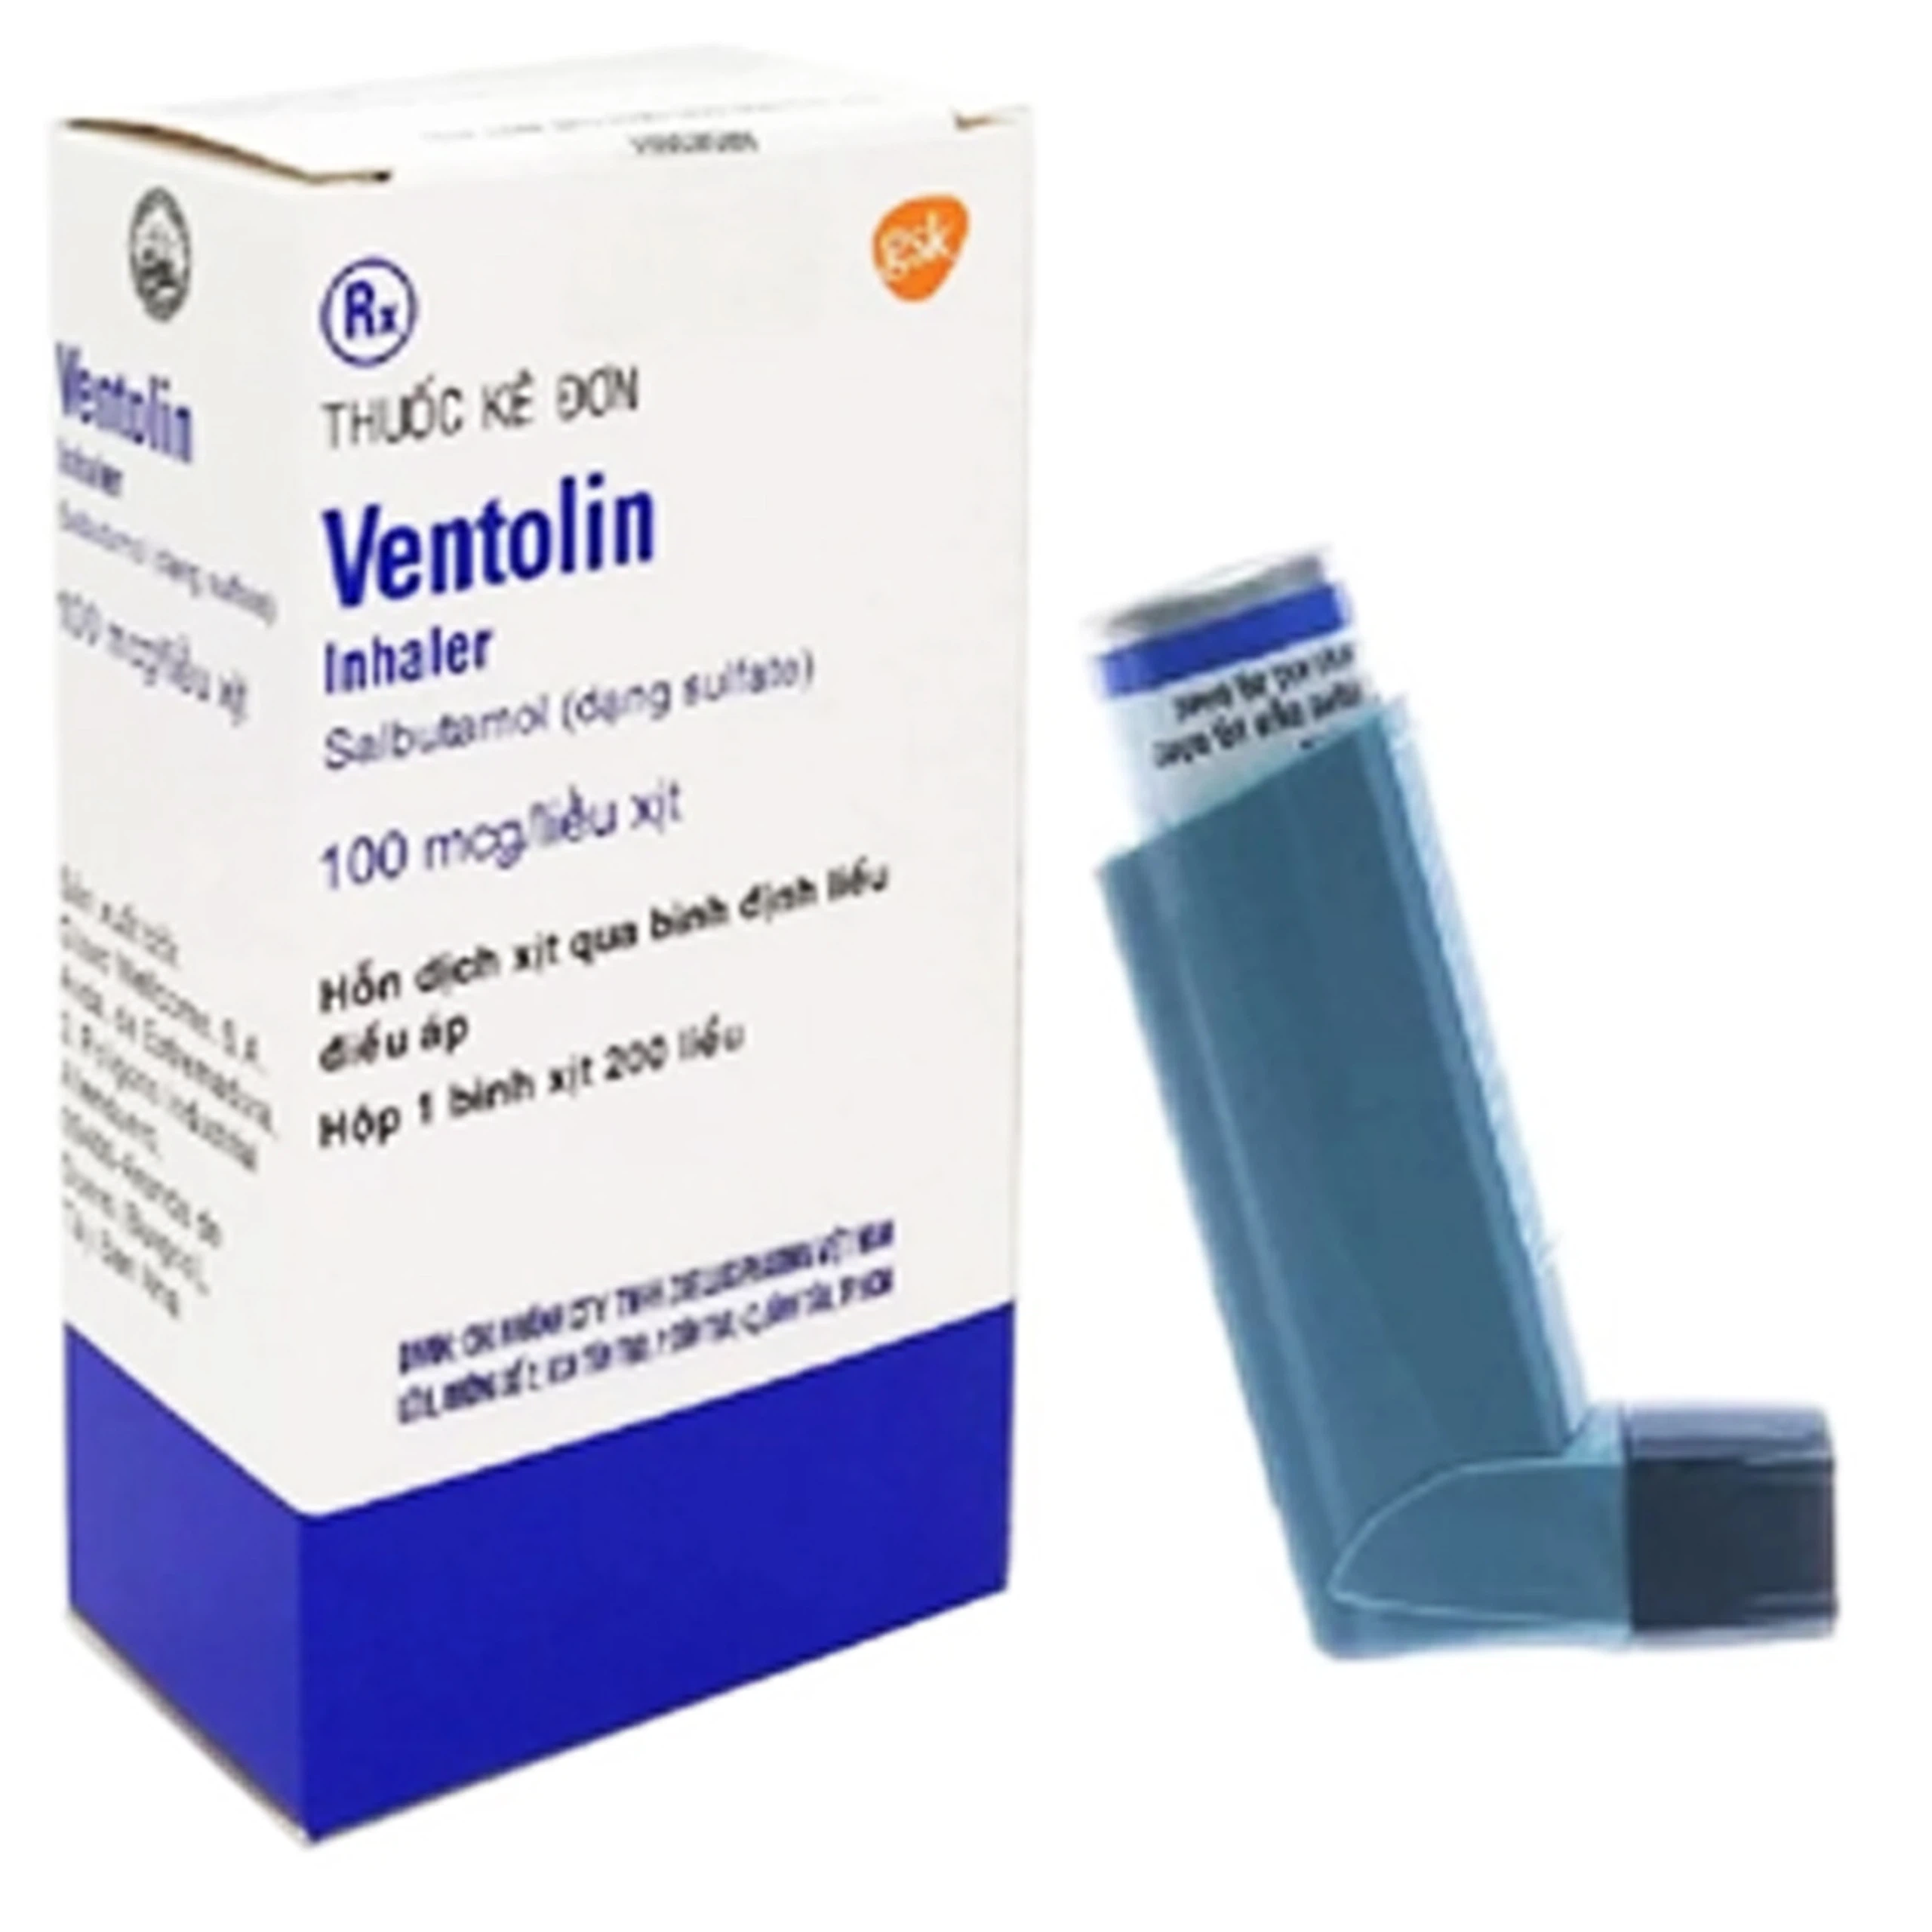 Hỗn dịch xịt Ventolin Inhaler 100mcg/liều GSK giãn cơ trơn phế quản (200 liều)